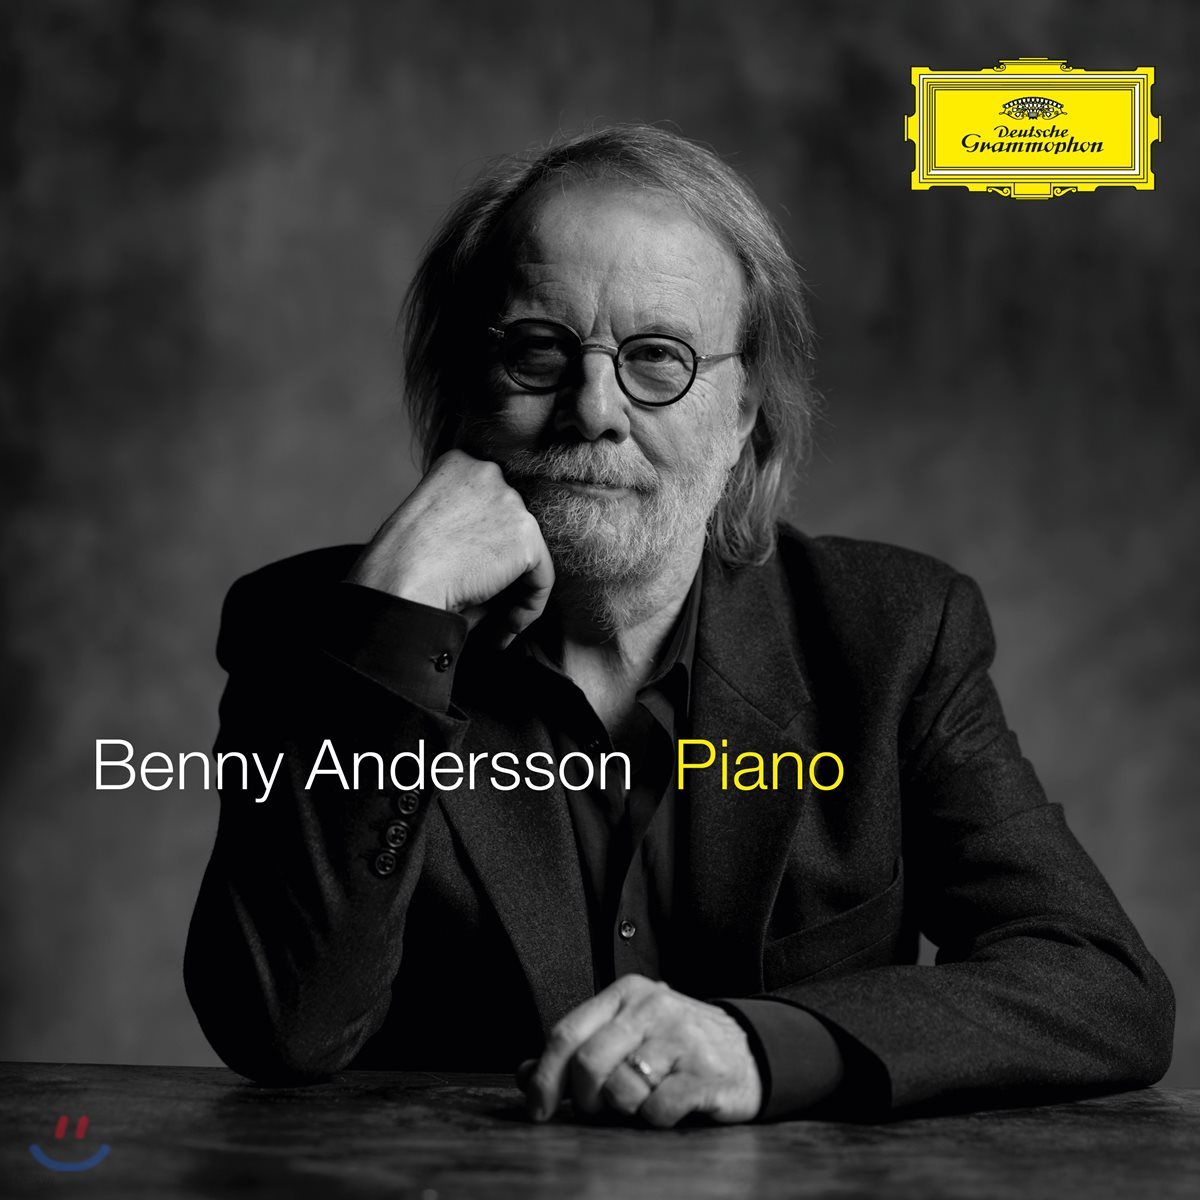 아바의 `베니 앤더슨`이 피아노로 연주한 아바의 명곡 (Benny Andersson - Piano)